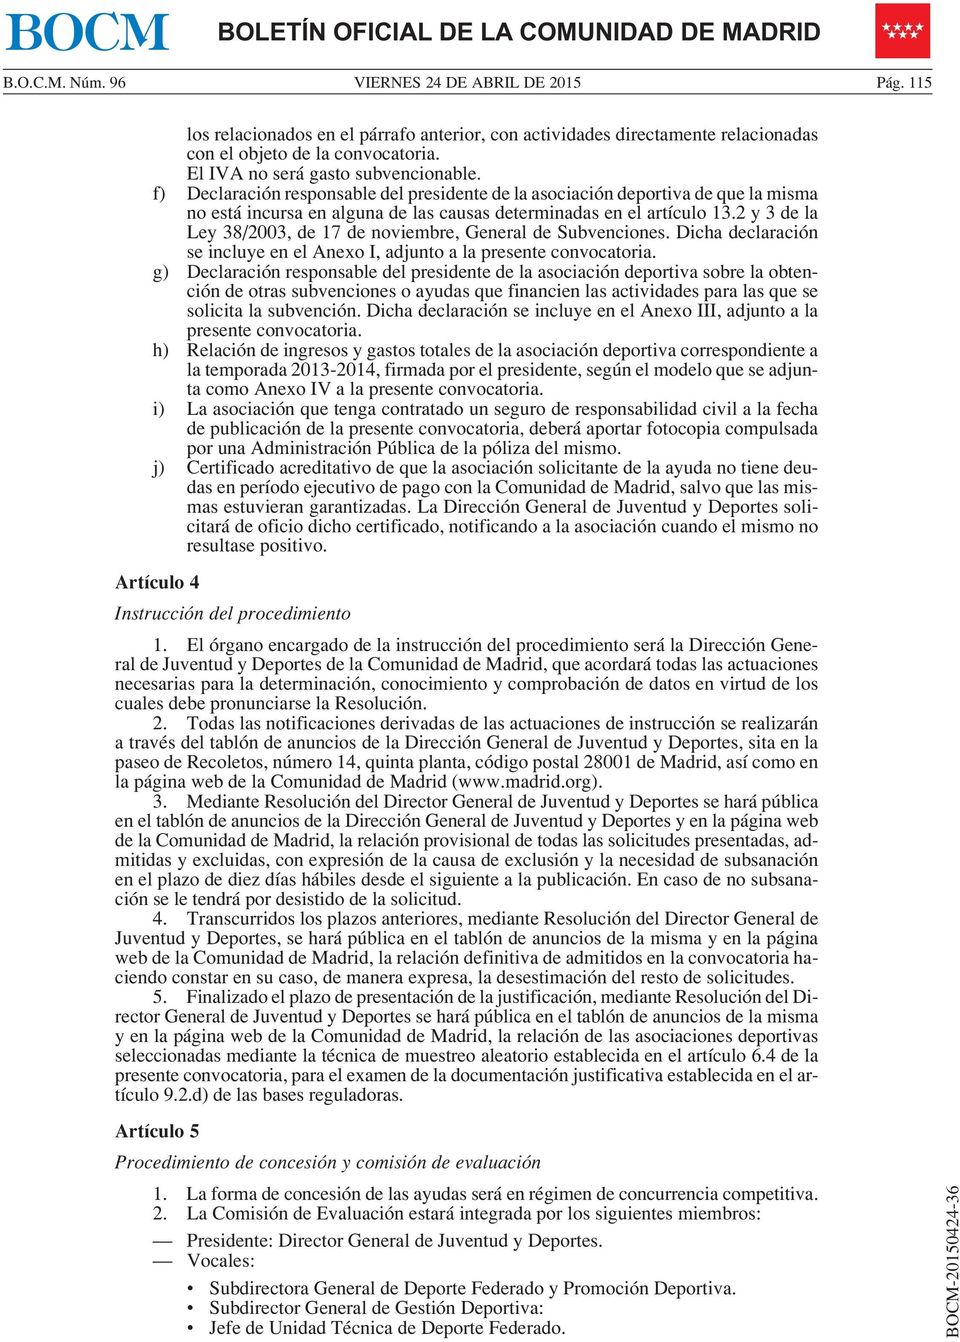 2 y3dela Ley 38/2003, de 17 de noviembre, General de Subvenciones. Dicha declaración se incluye en el Anexo I, adjunto a la presente convocatoria.